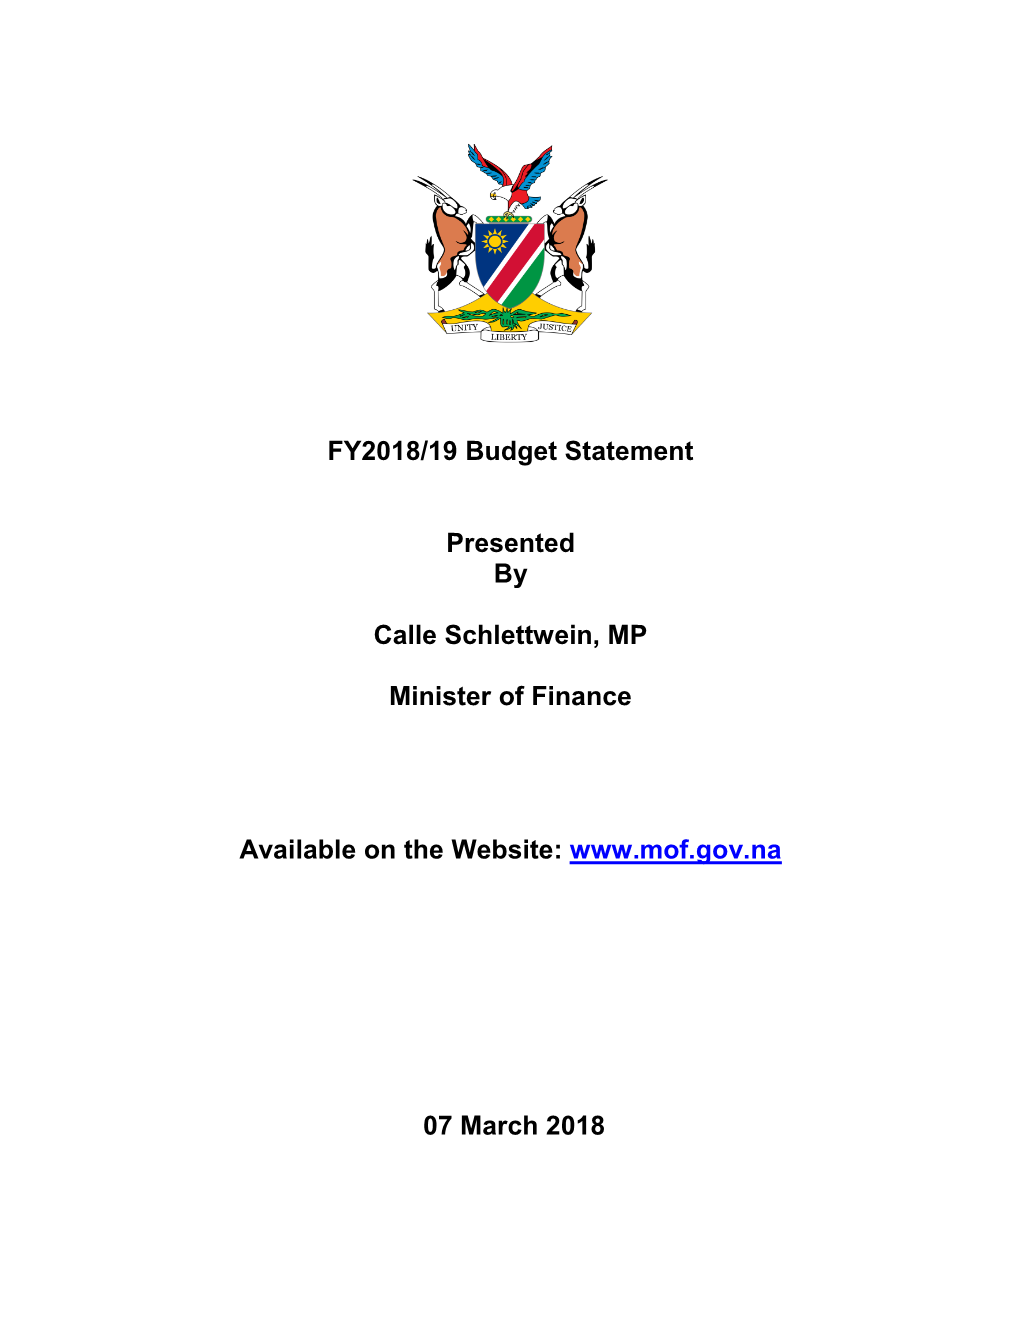 FY2018/19 Budget Statement Presented by Calle Schlettwein, MP